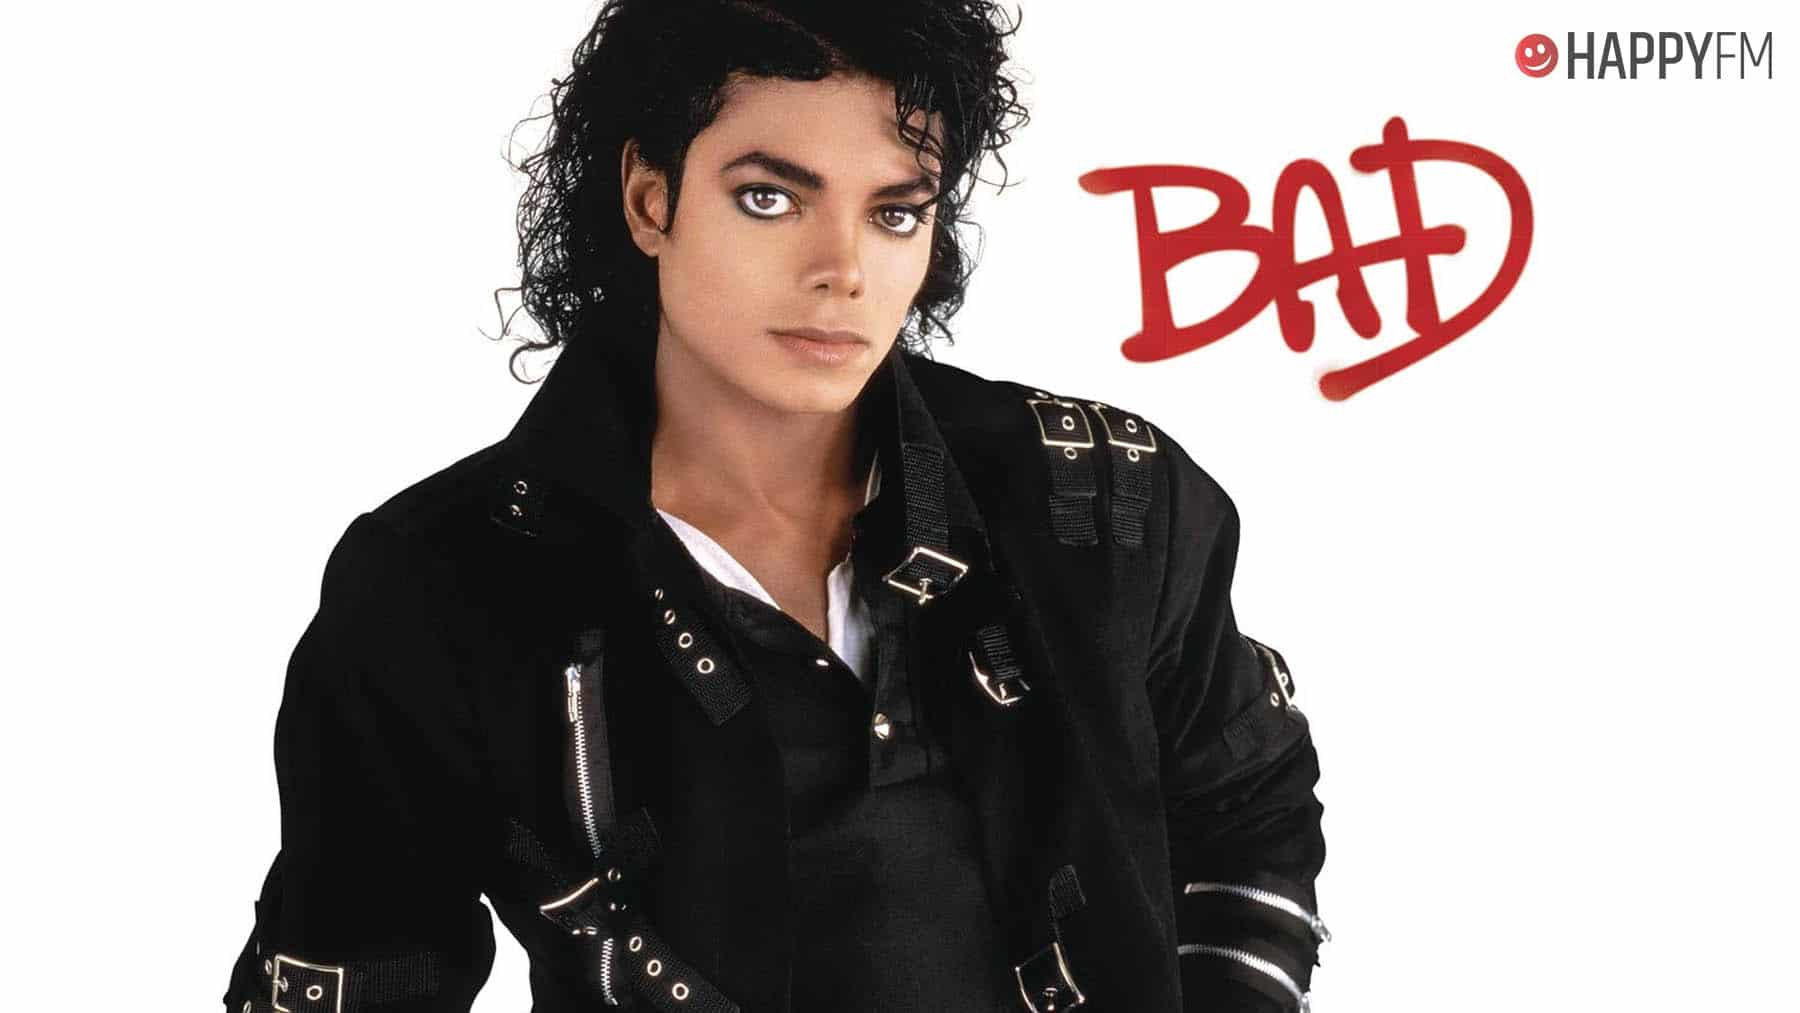 ‘Bad’, de Michael Jackson: letra (en español), historia y vídeo